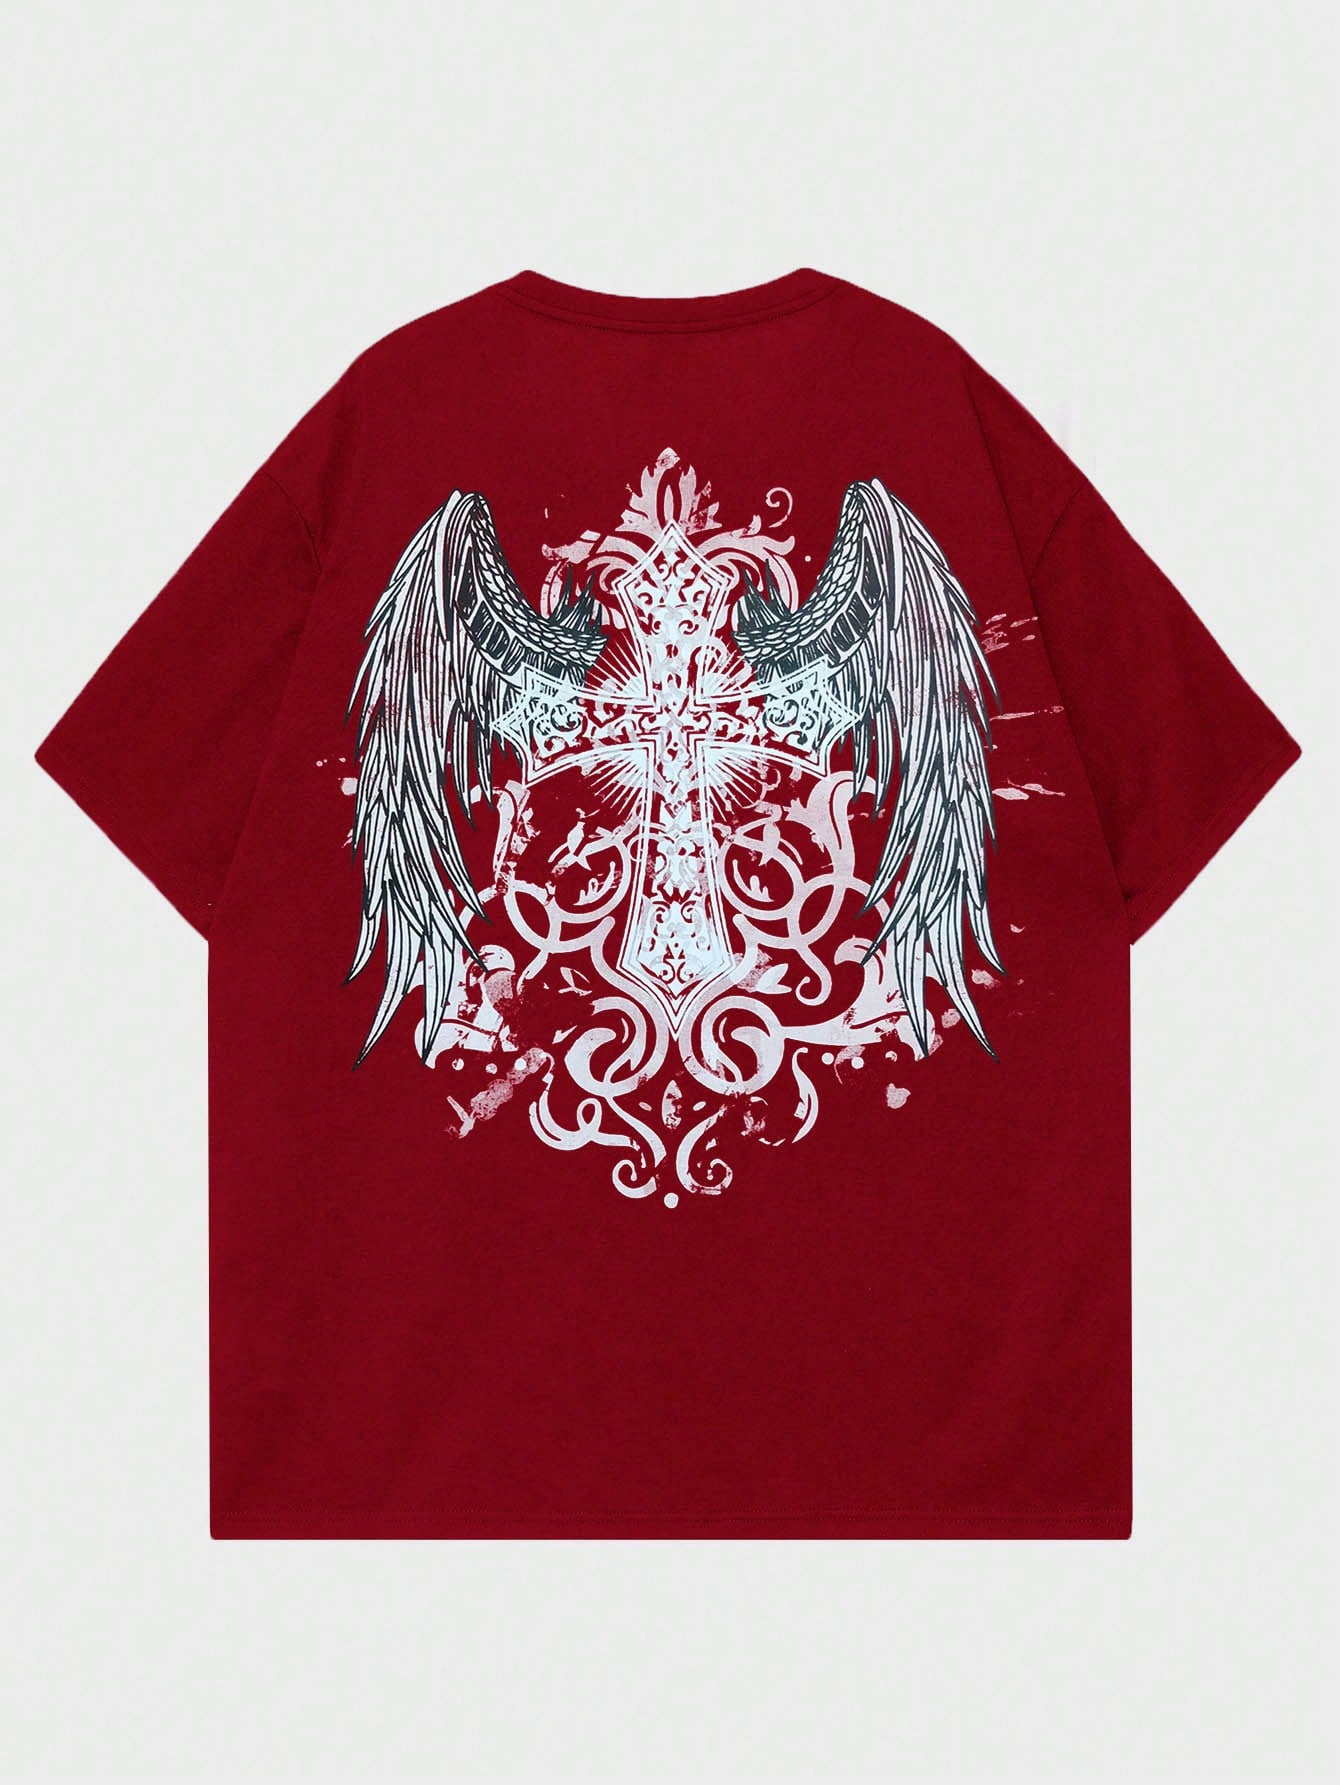 ROMWE Goth Мужская футболка с принтом снежинки и крестом для повседневной жизни, красный